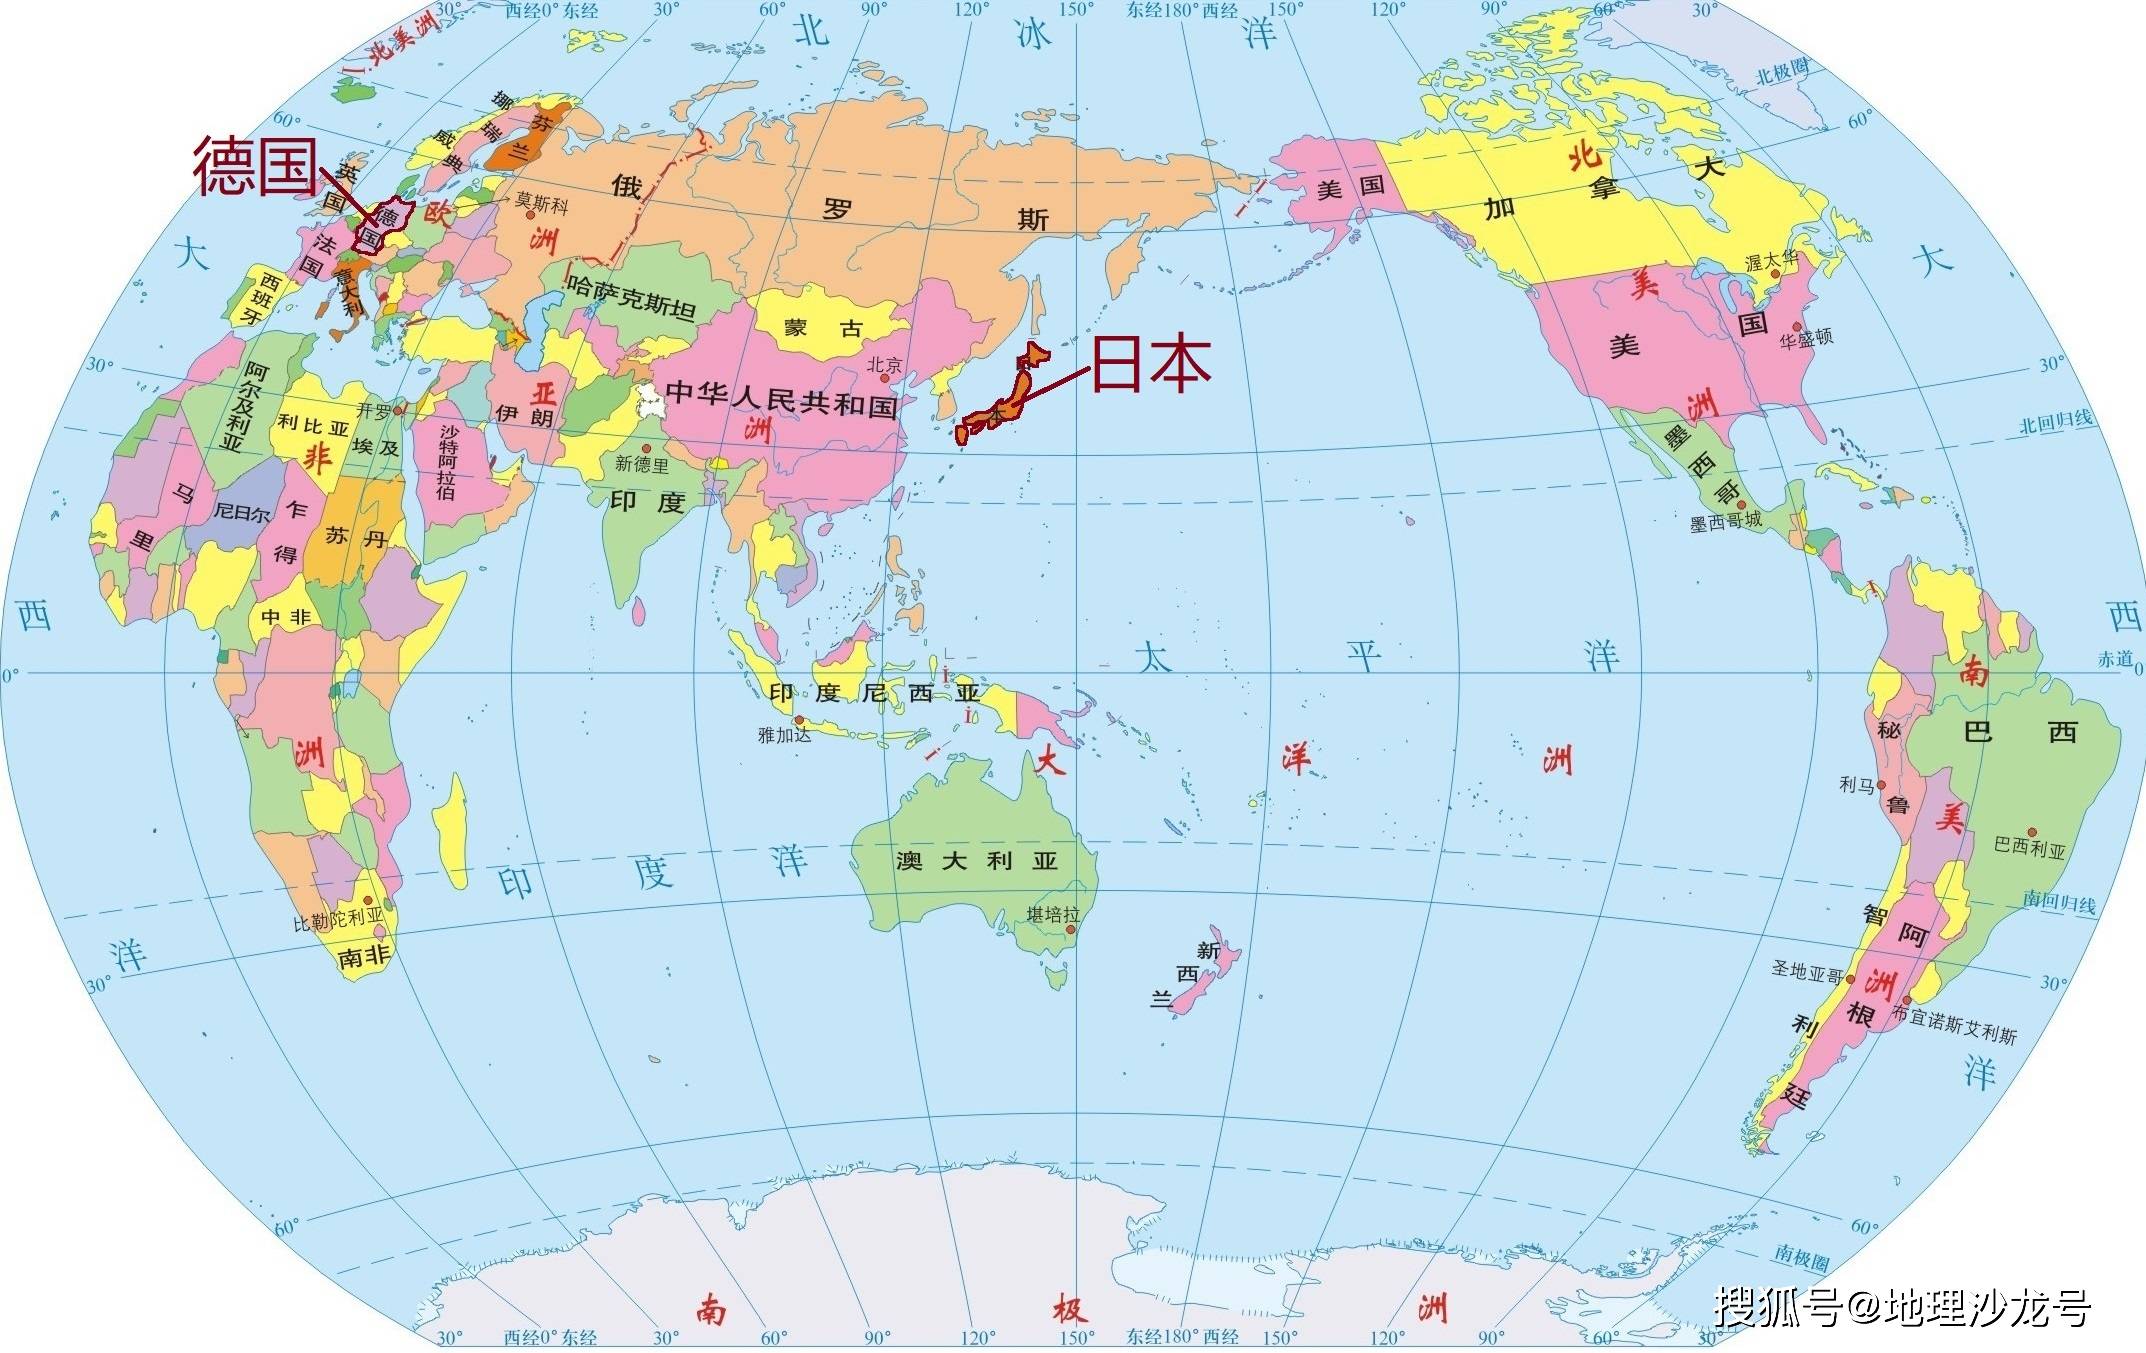 世界政区图简易画法图片